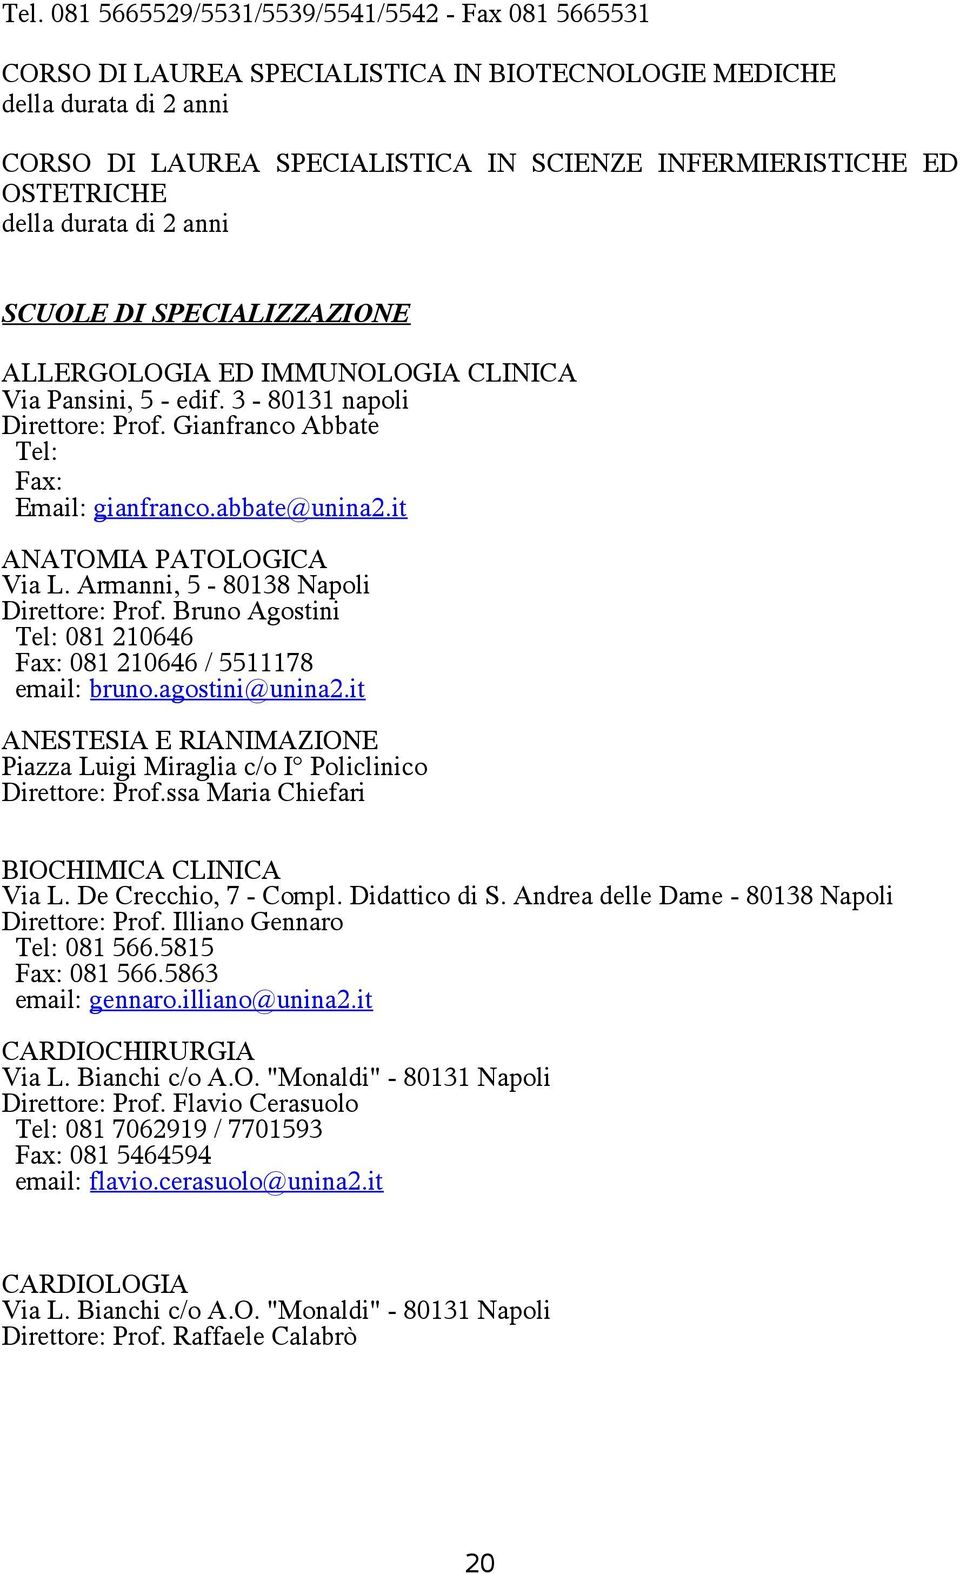 abbate@unina2.it ANATOMIA PATOLOGICA Via L. Armanni, 5-80138 Napoli Direttore: Prof. Bruno Agostini Tel: 081 210646 Fax: 081 210646 / 5511178 email: bruno.agostini@unina2.